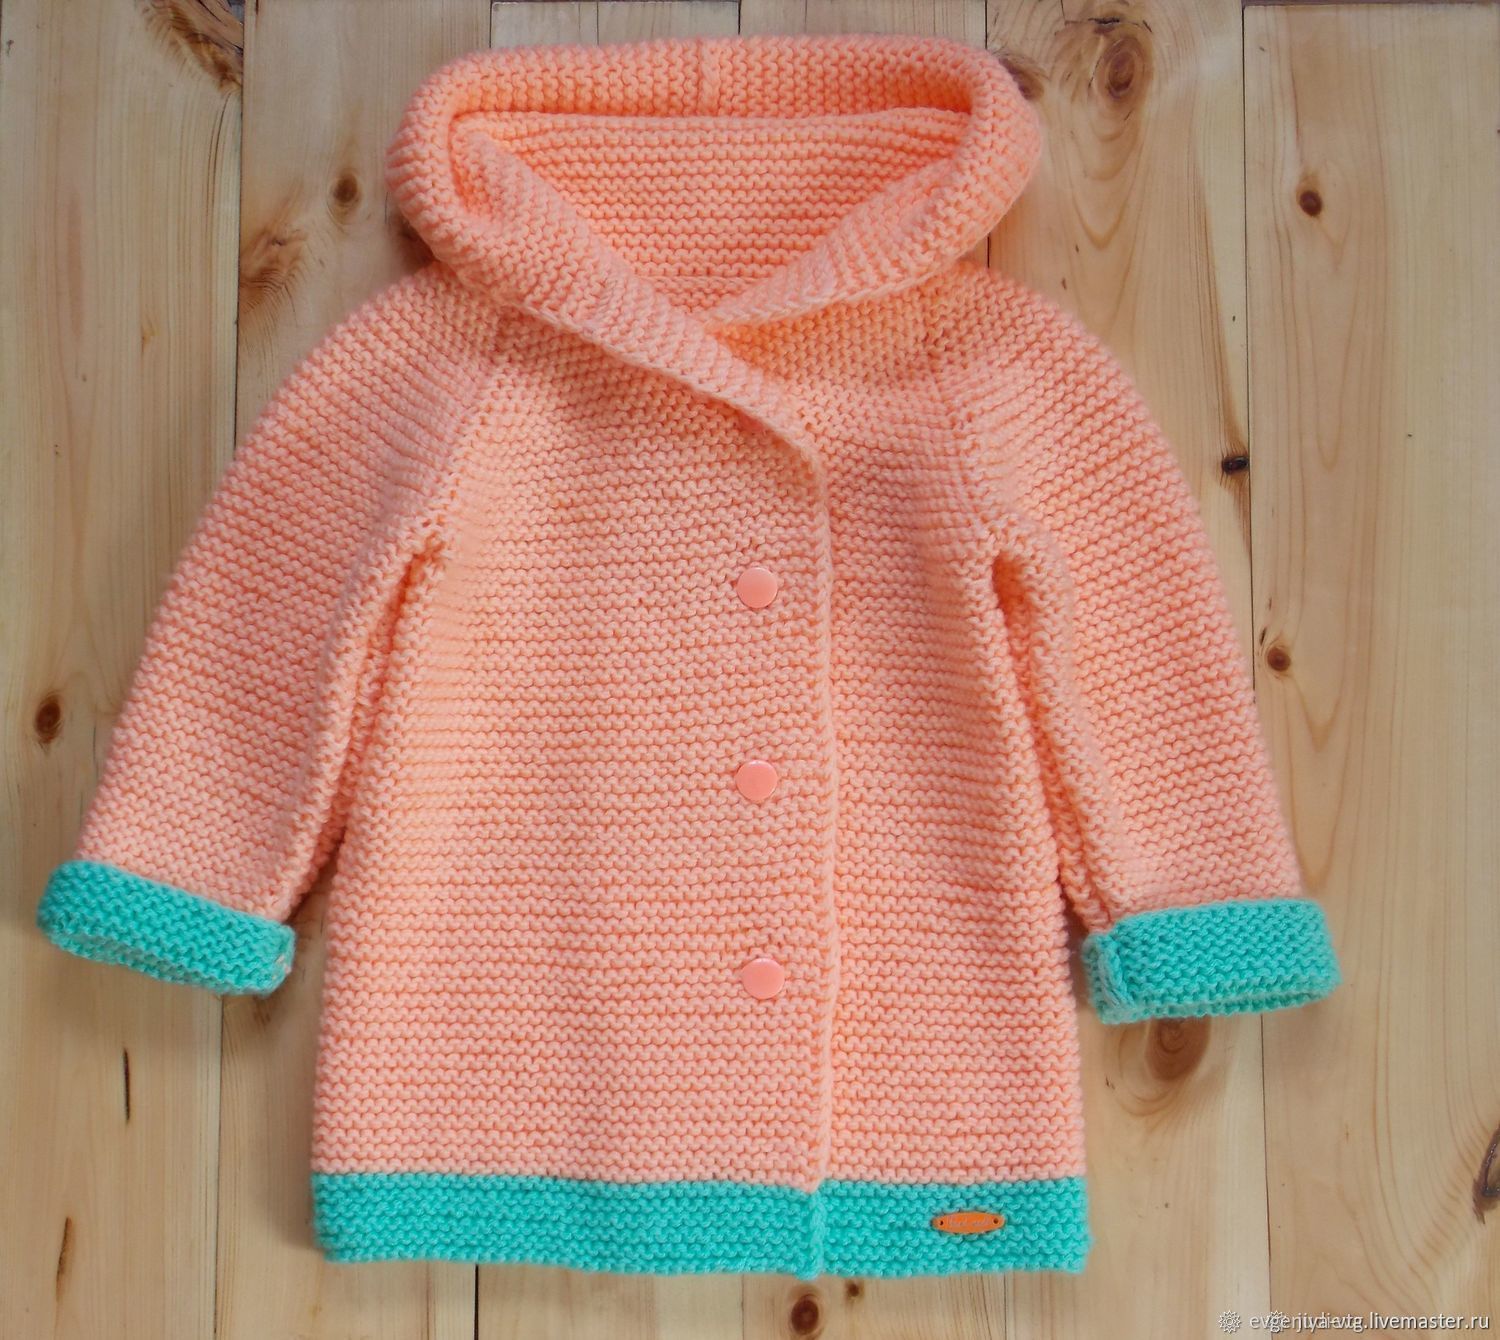 Вязаное пальто для девочки 7 лет